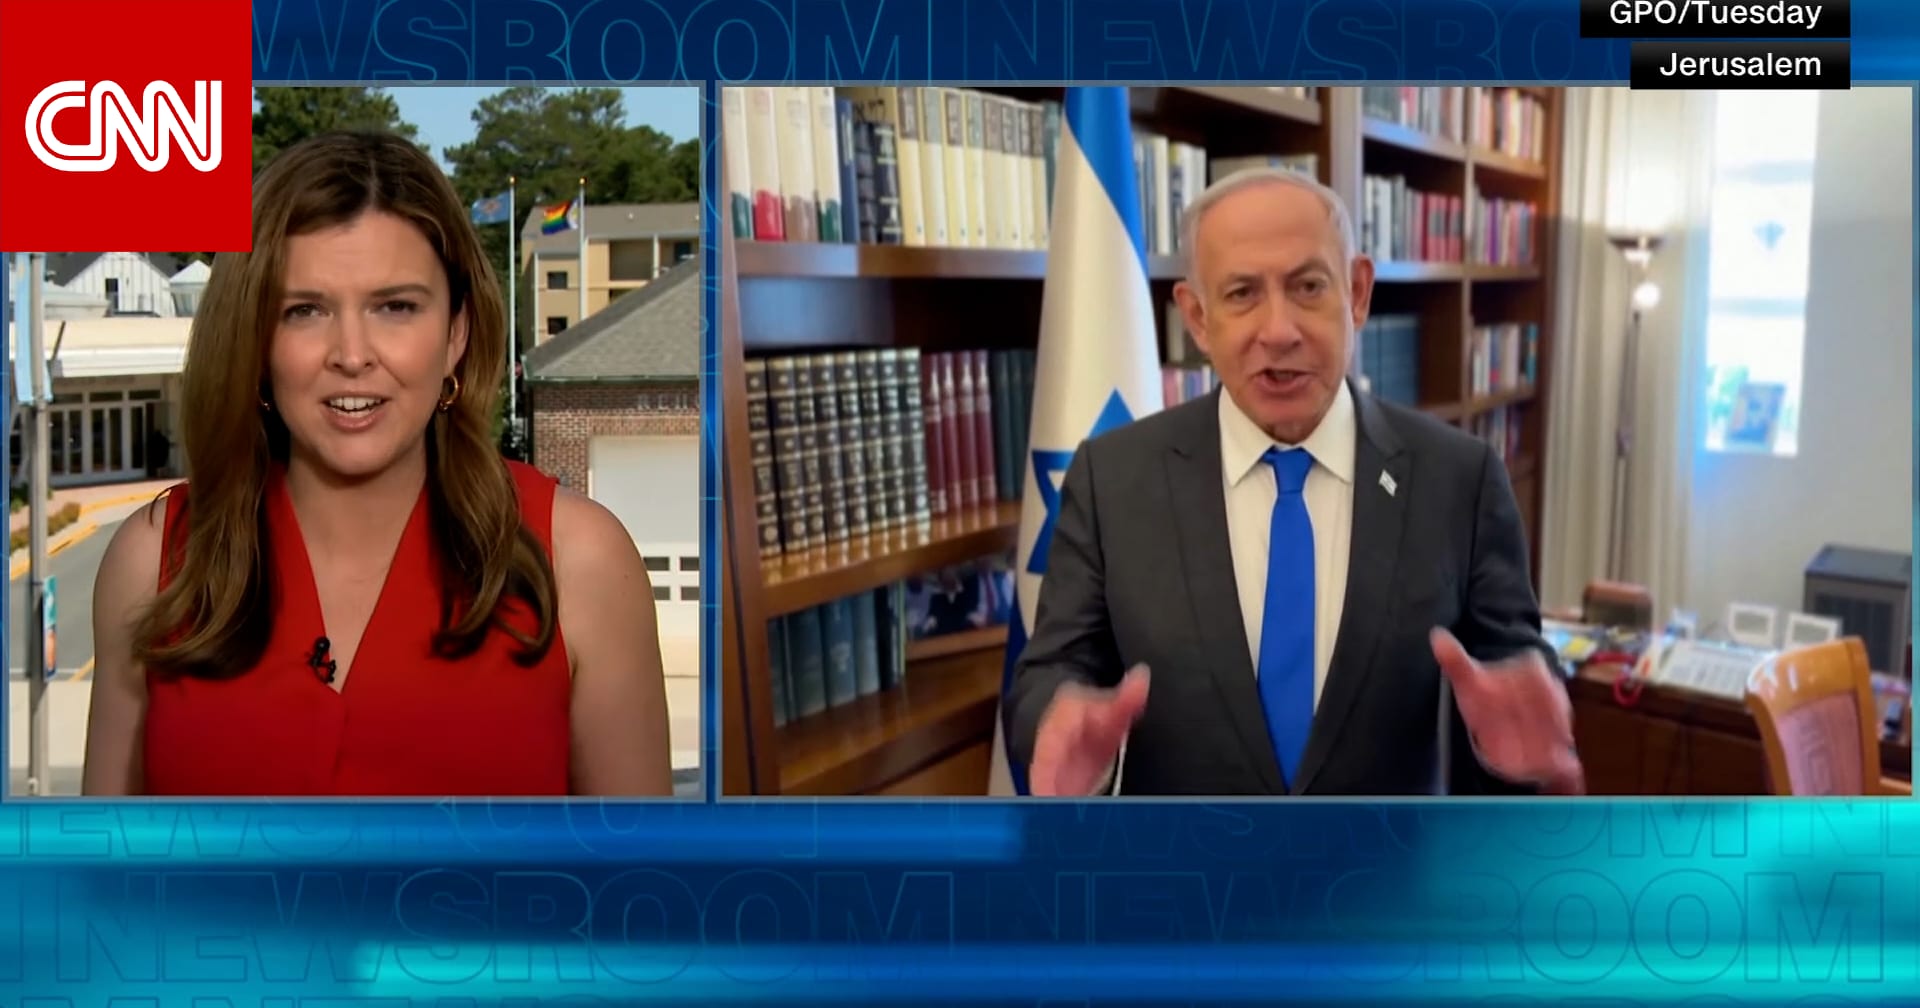 البيت الأبيض يلغي اجتماعًا مع إسرائيل بعدما نشر نتنياهو مقطع فيديو.. إليك تفاصيل ما حدث